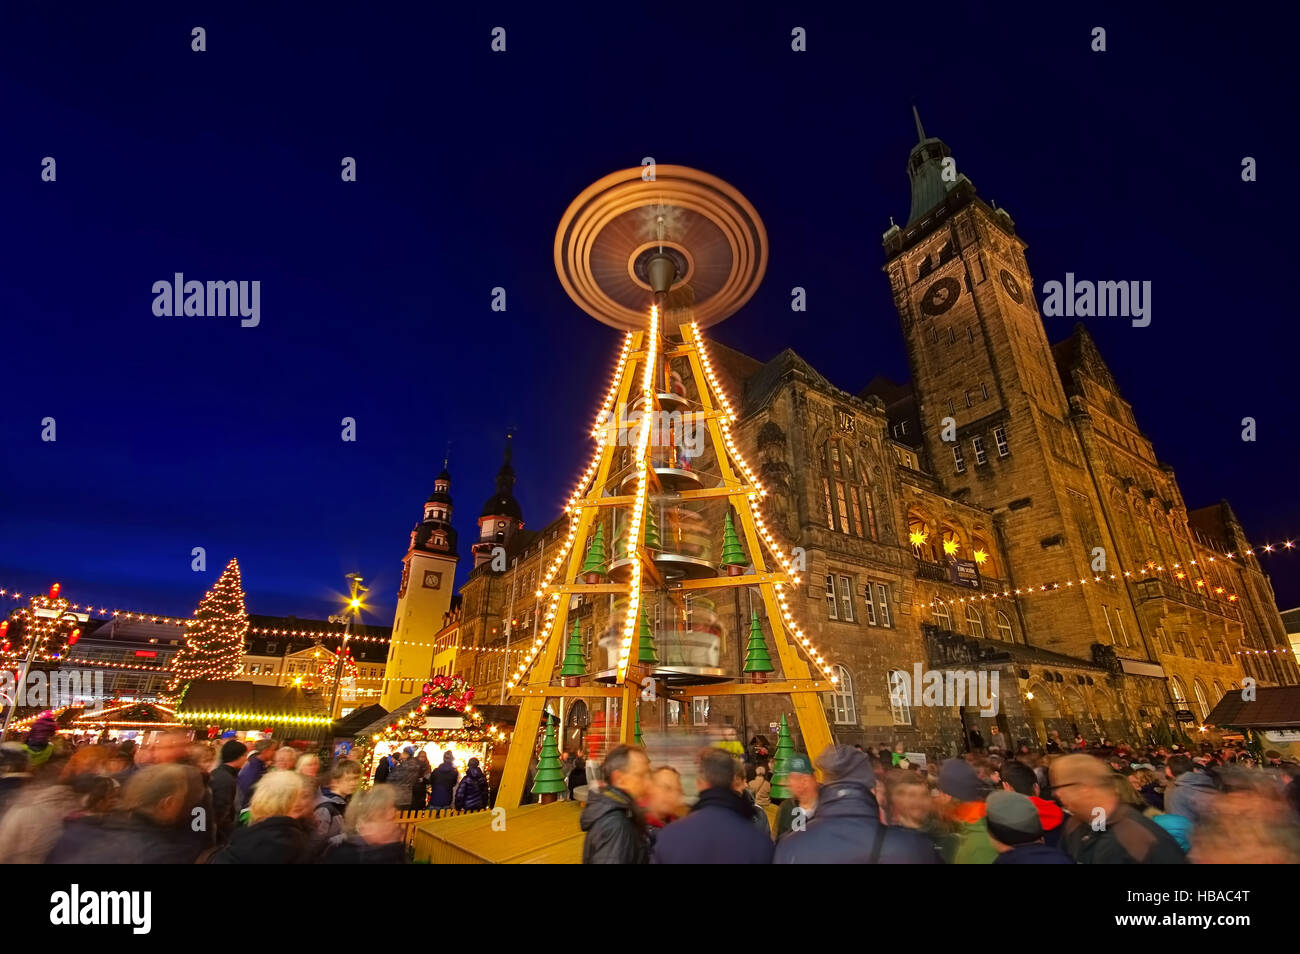 Chemnitz Weihnachtsmarkt - Chemnitz christmas market in Germany Stock Photo